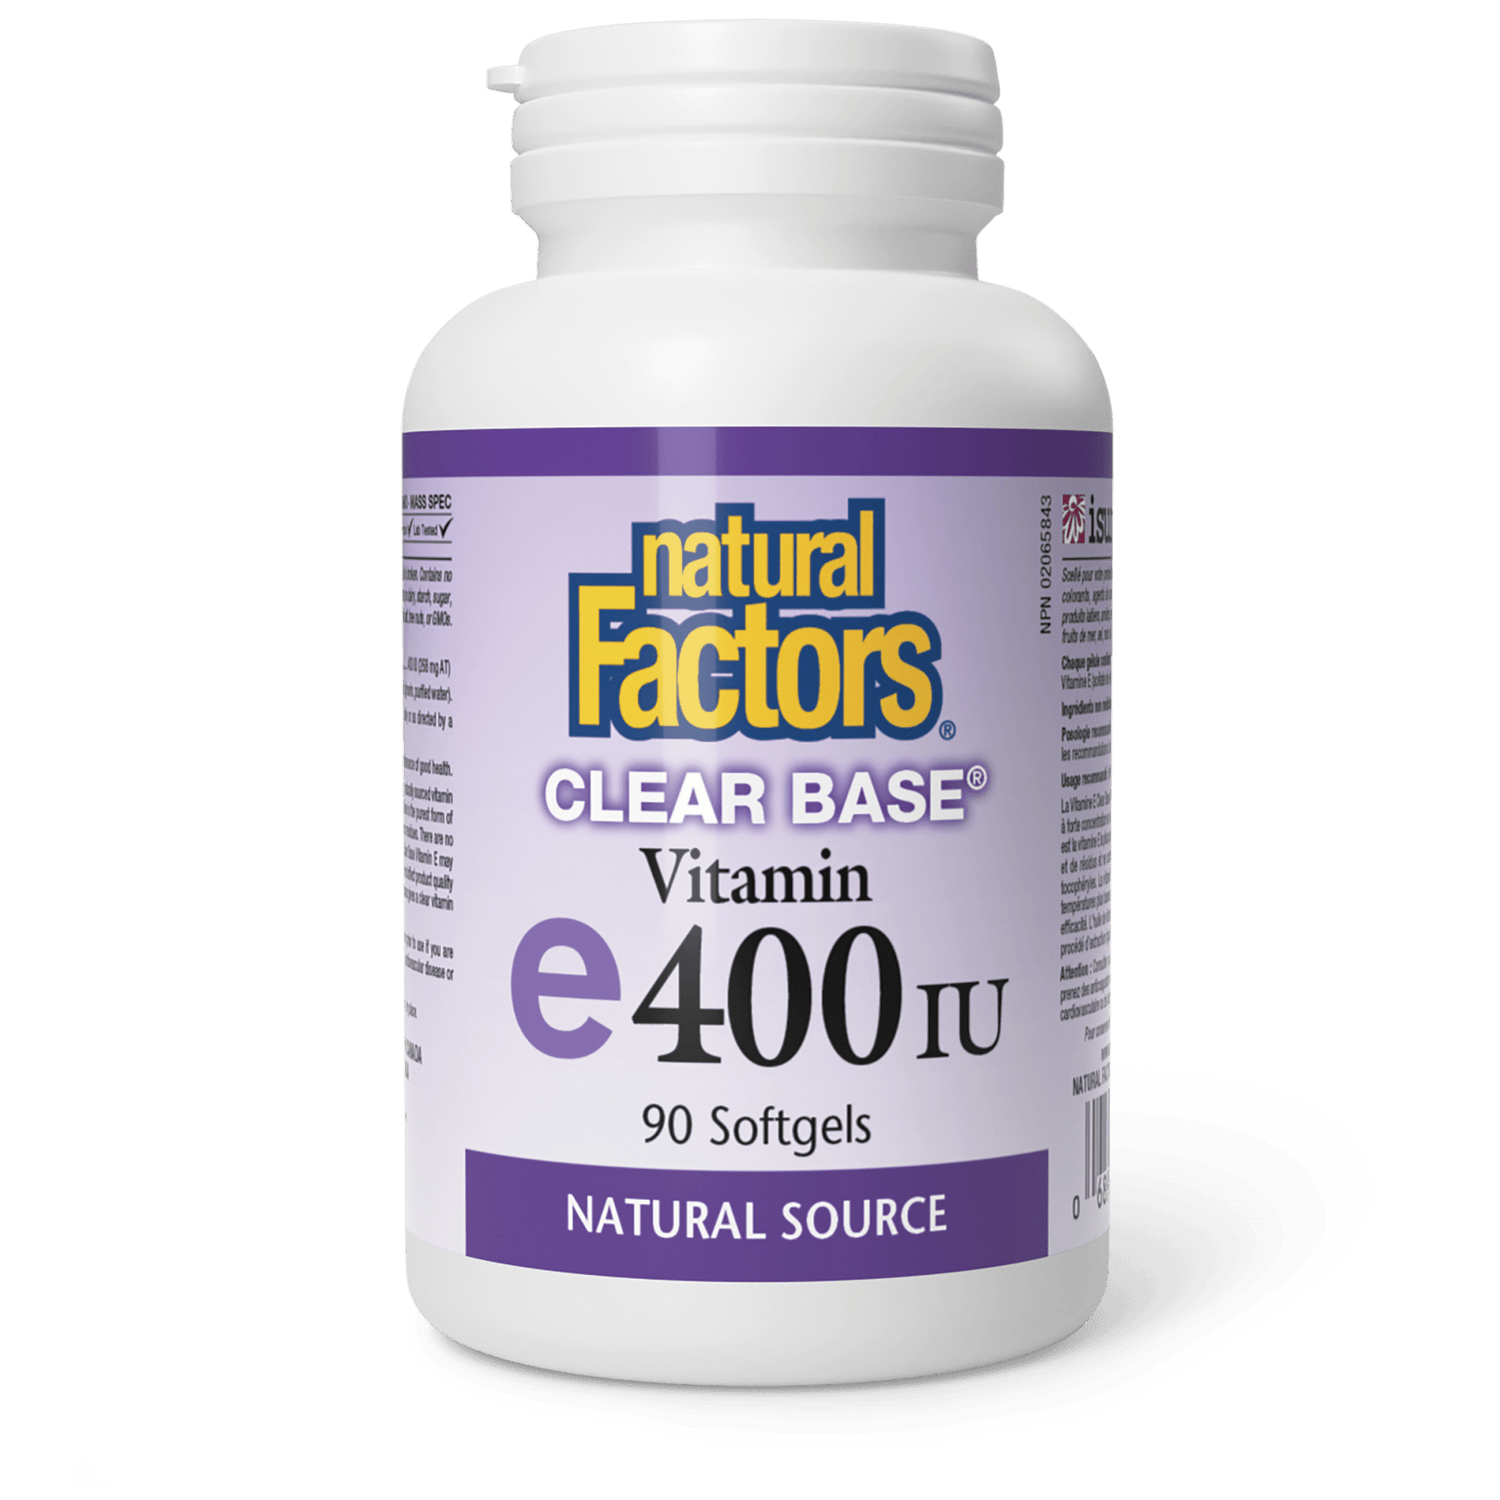 Vitamin E Clear Base® 400 IU, Natural Source, Natural Factors|v|image|1444